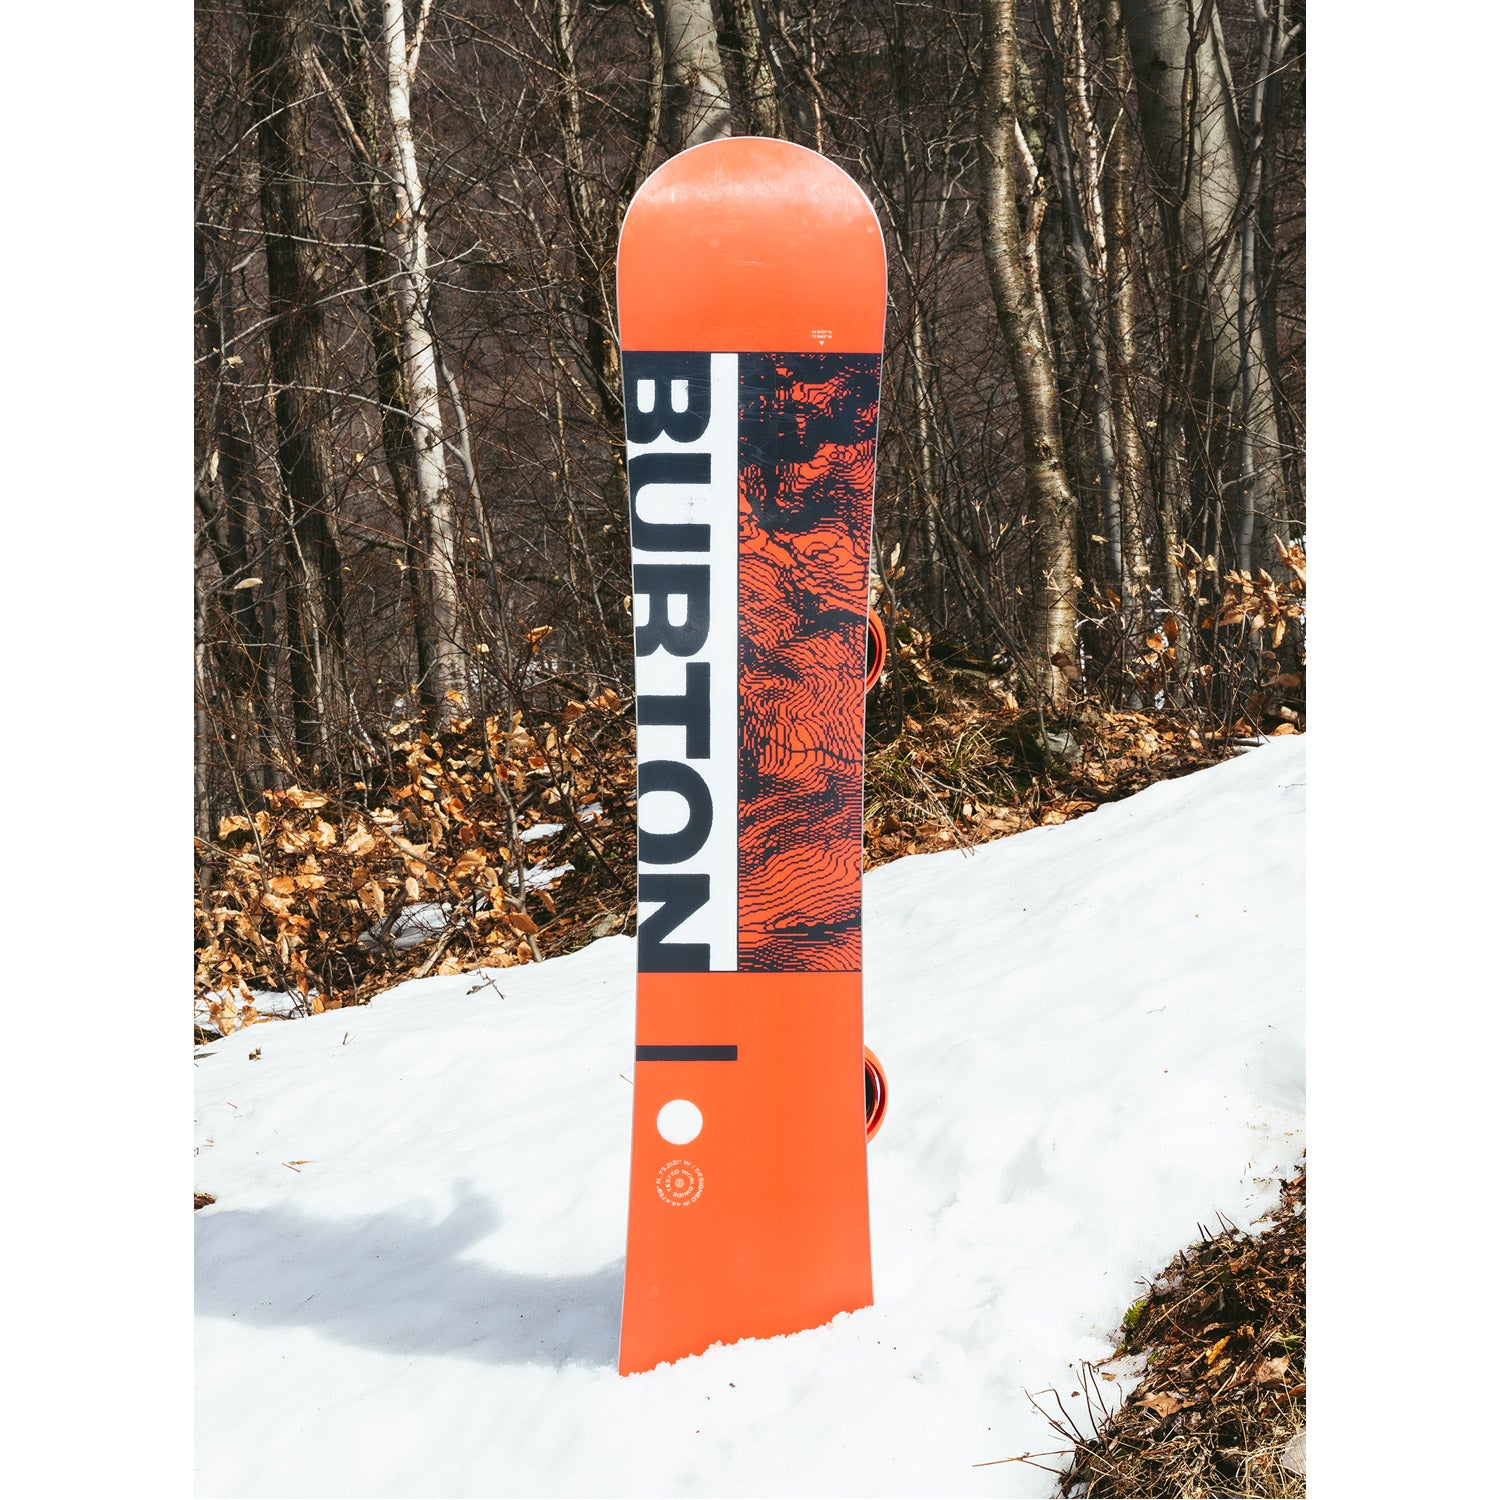 Burton Ripcord Snowboard w/ Freestyle Binding